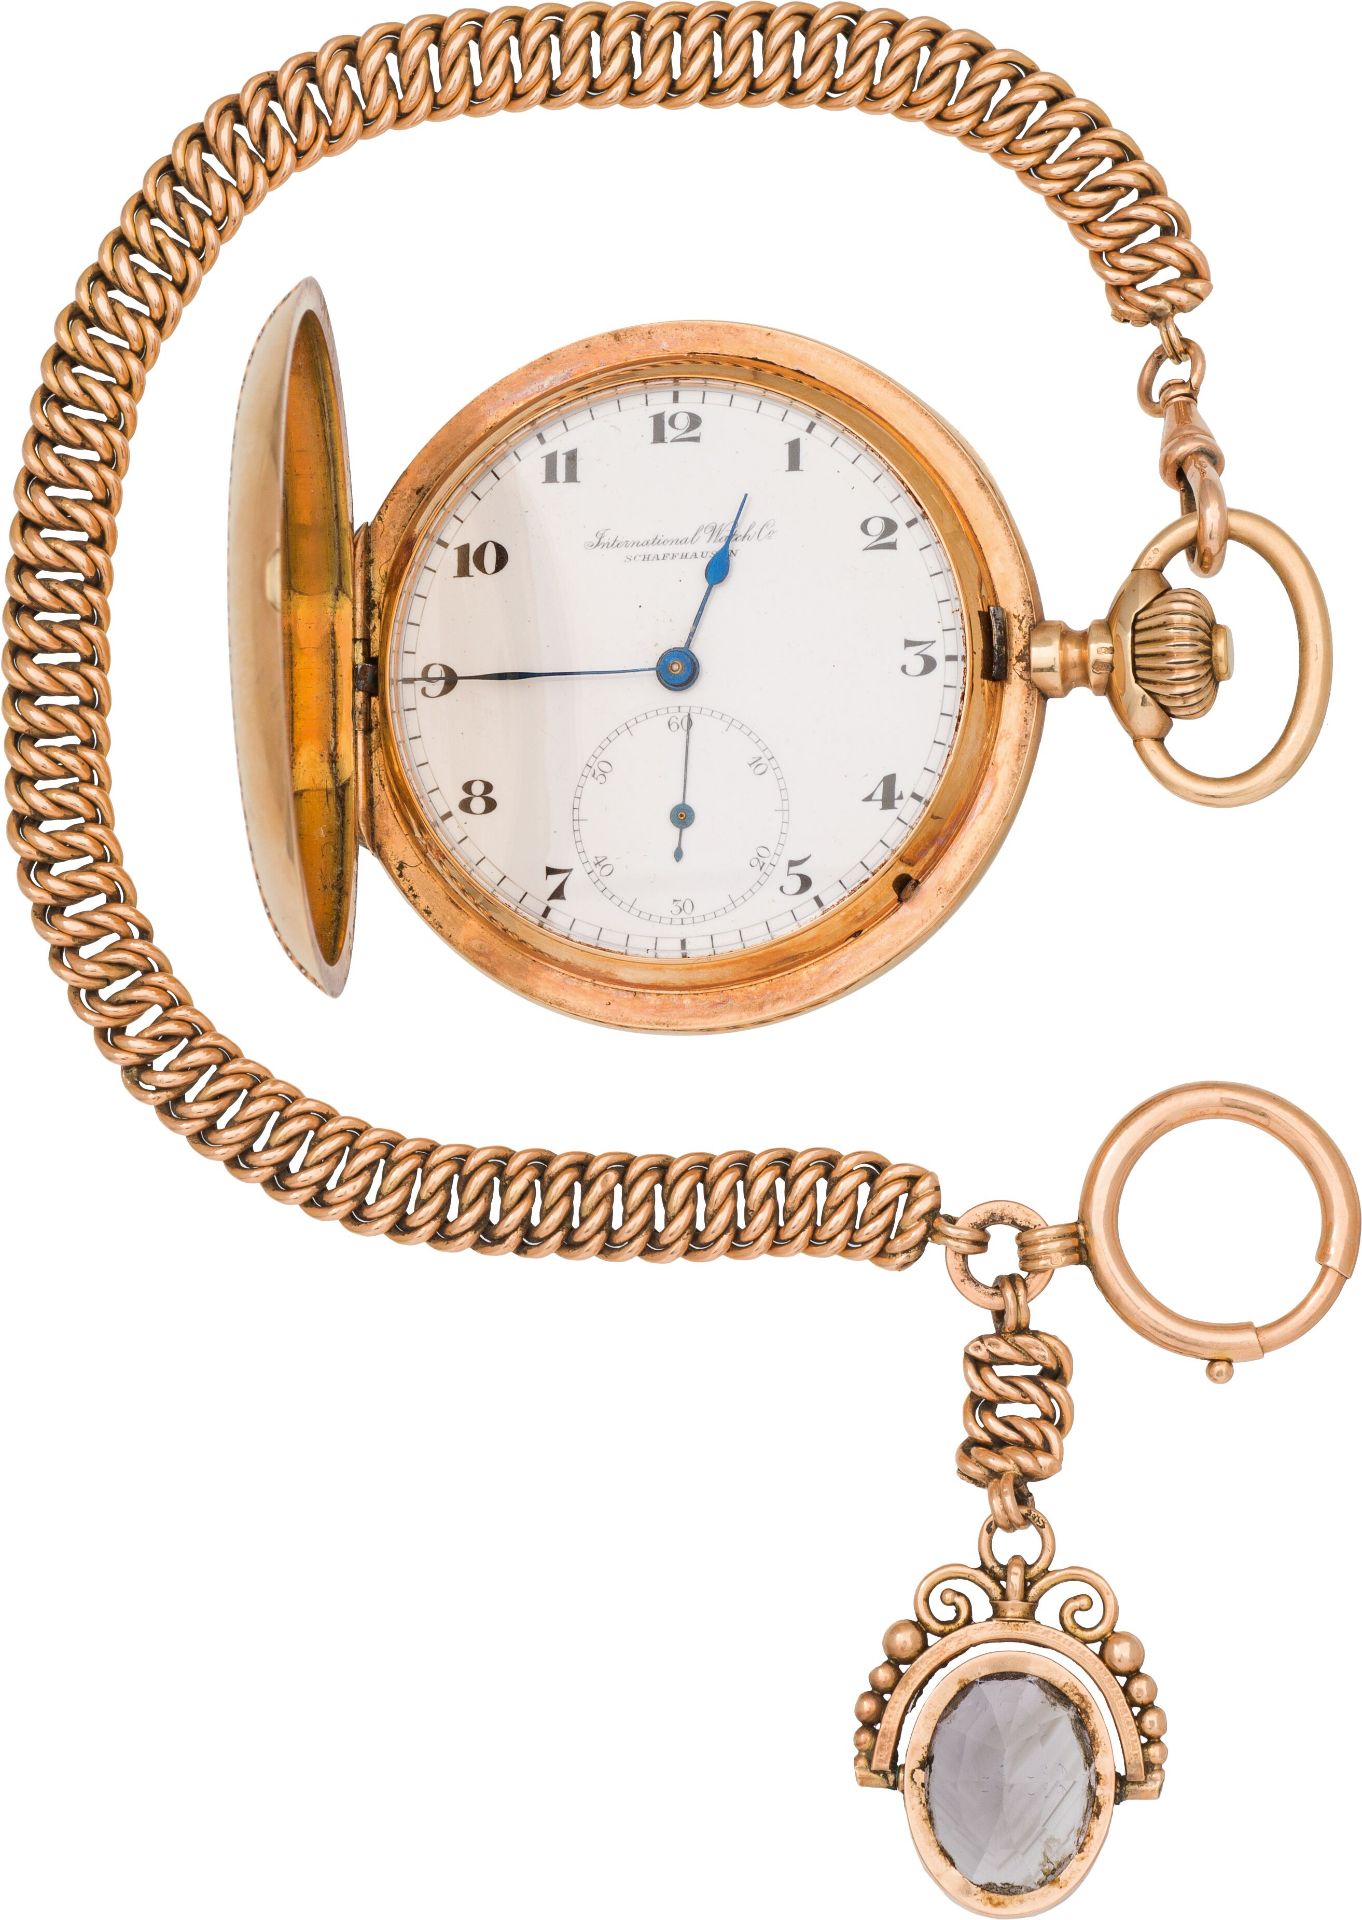 IWC SchaffhausenPocket watch with chainSwitzerland, early 20th century18k gold, gemstone; crown